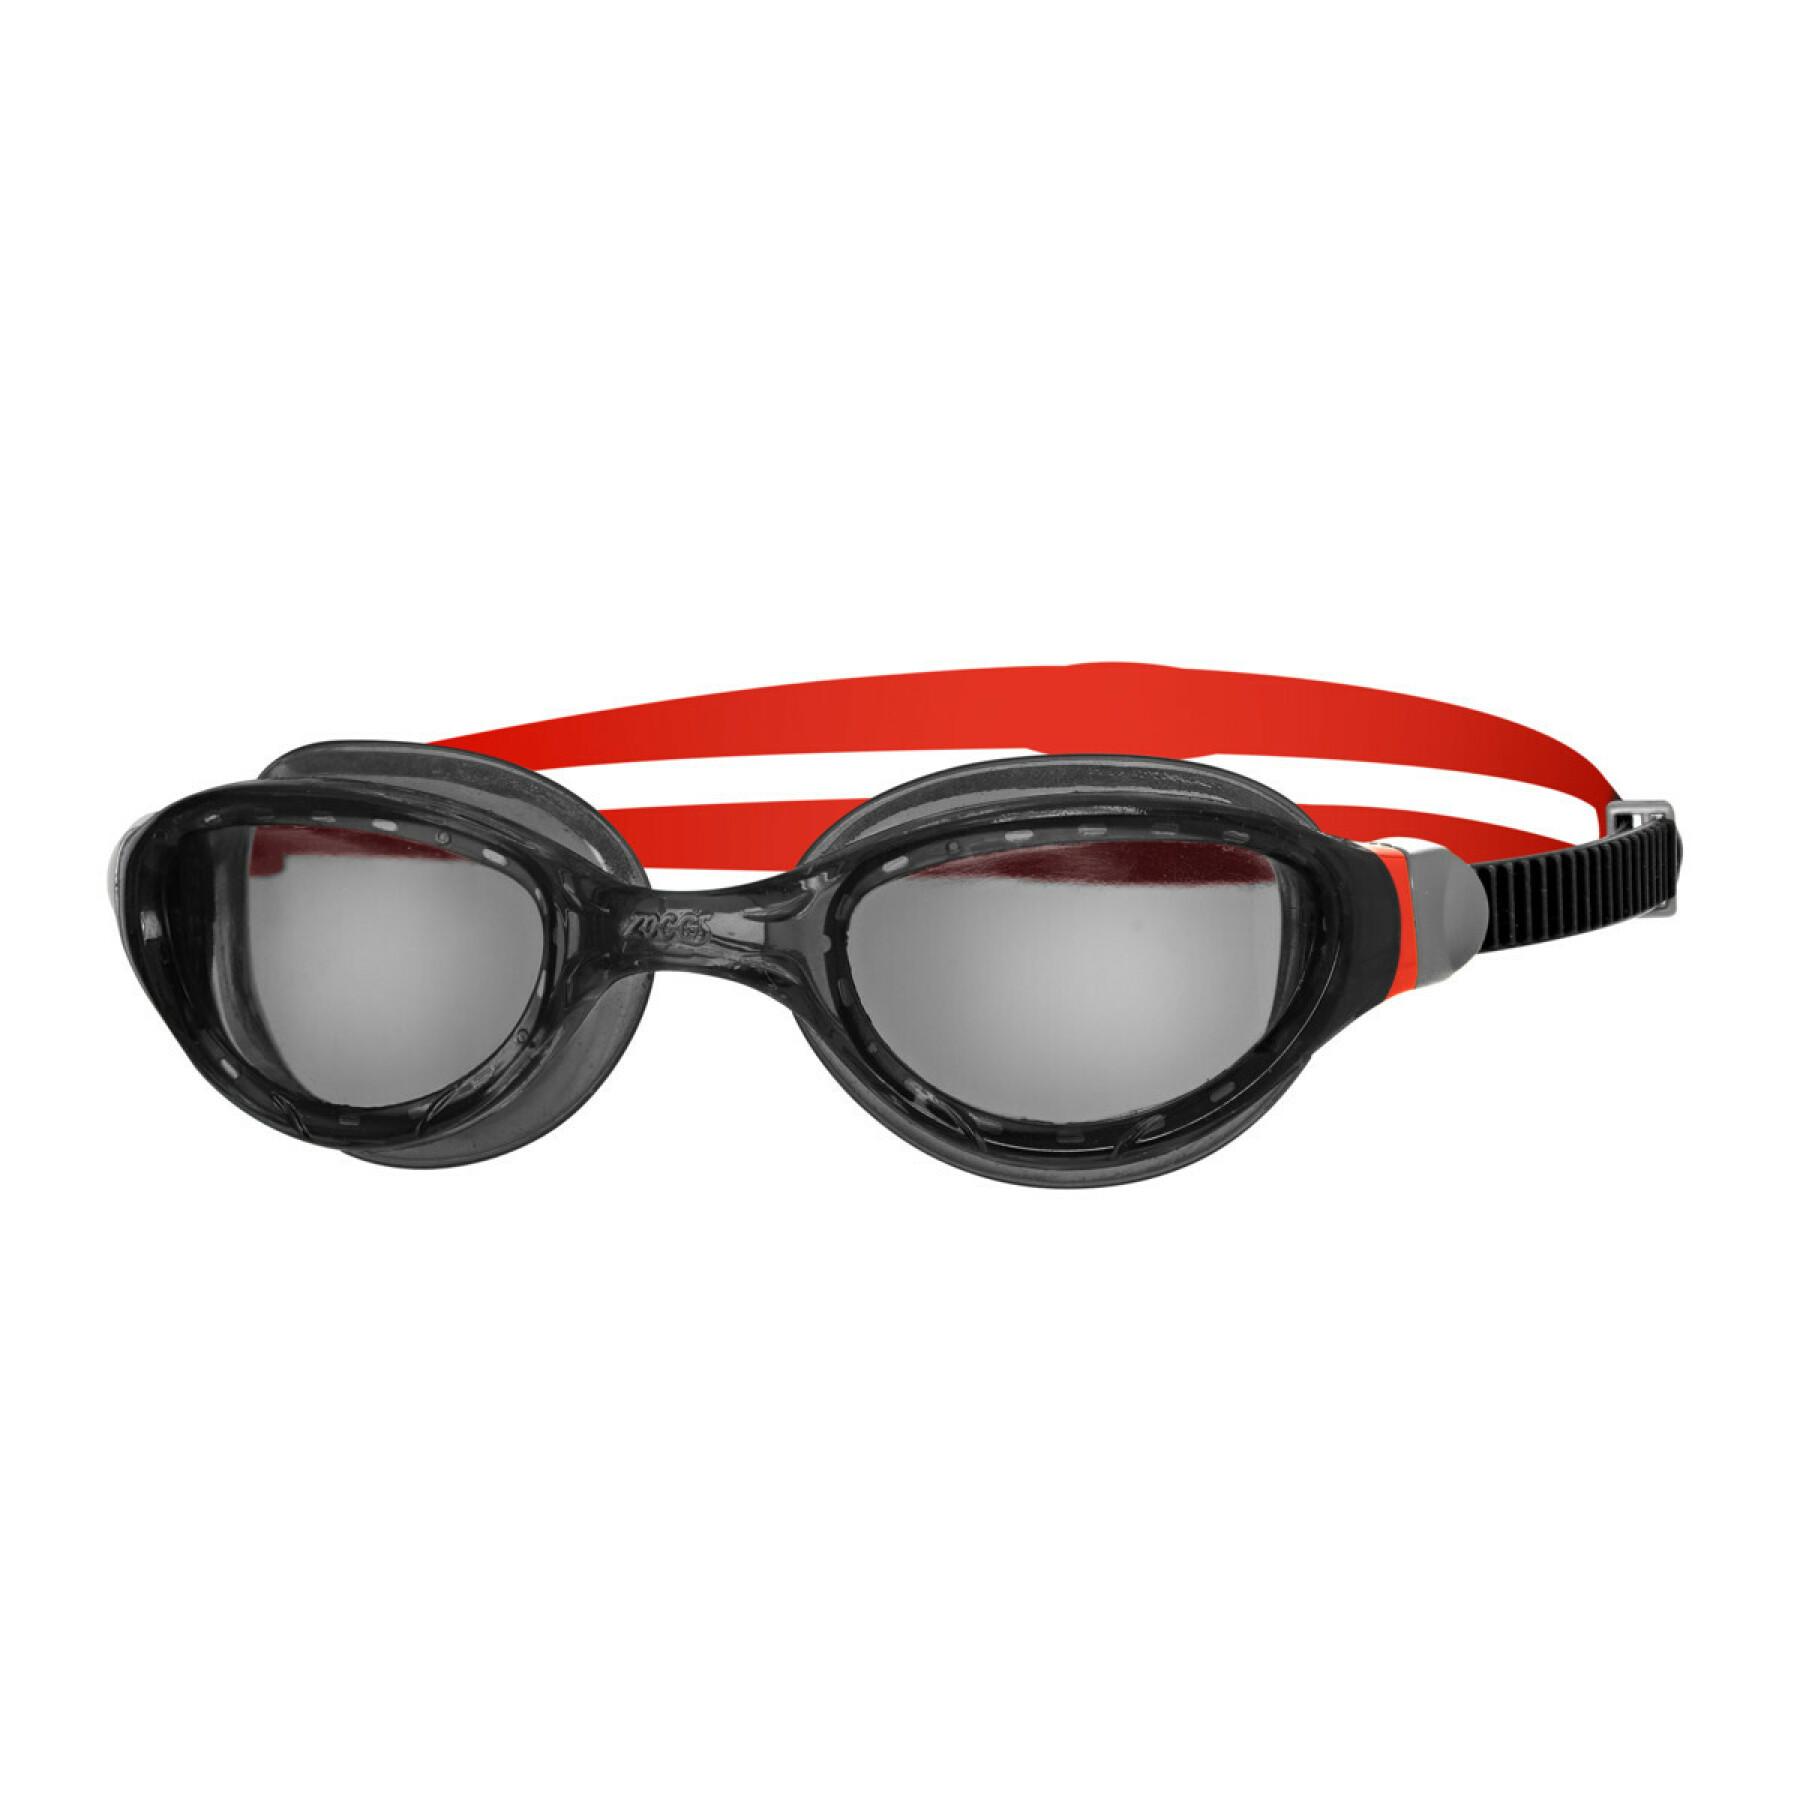 Simglasögon Zoggs Phantom 2.0